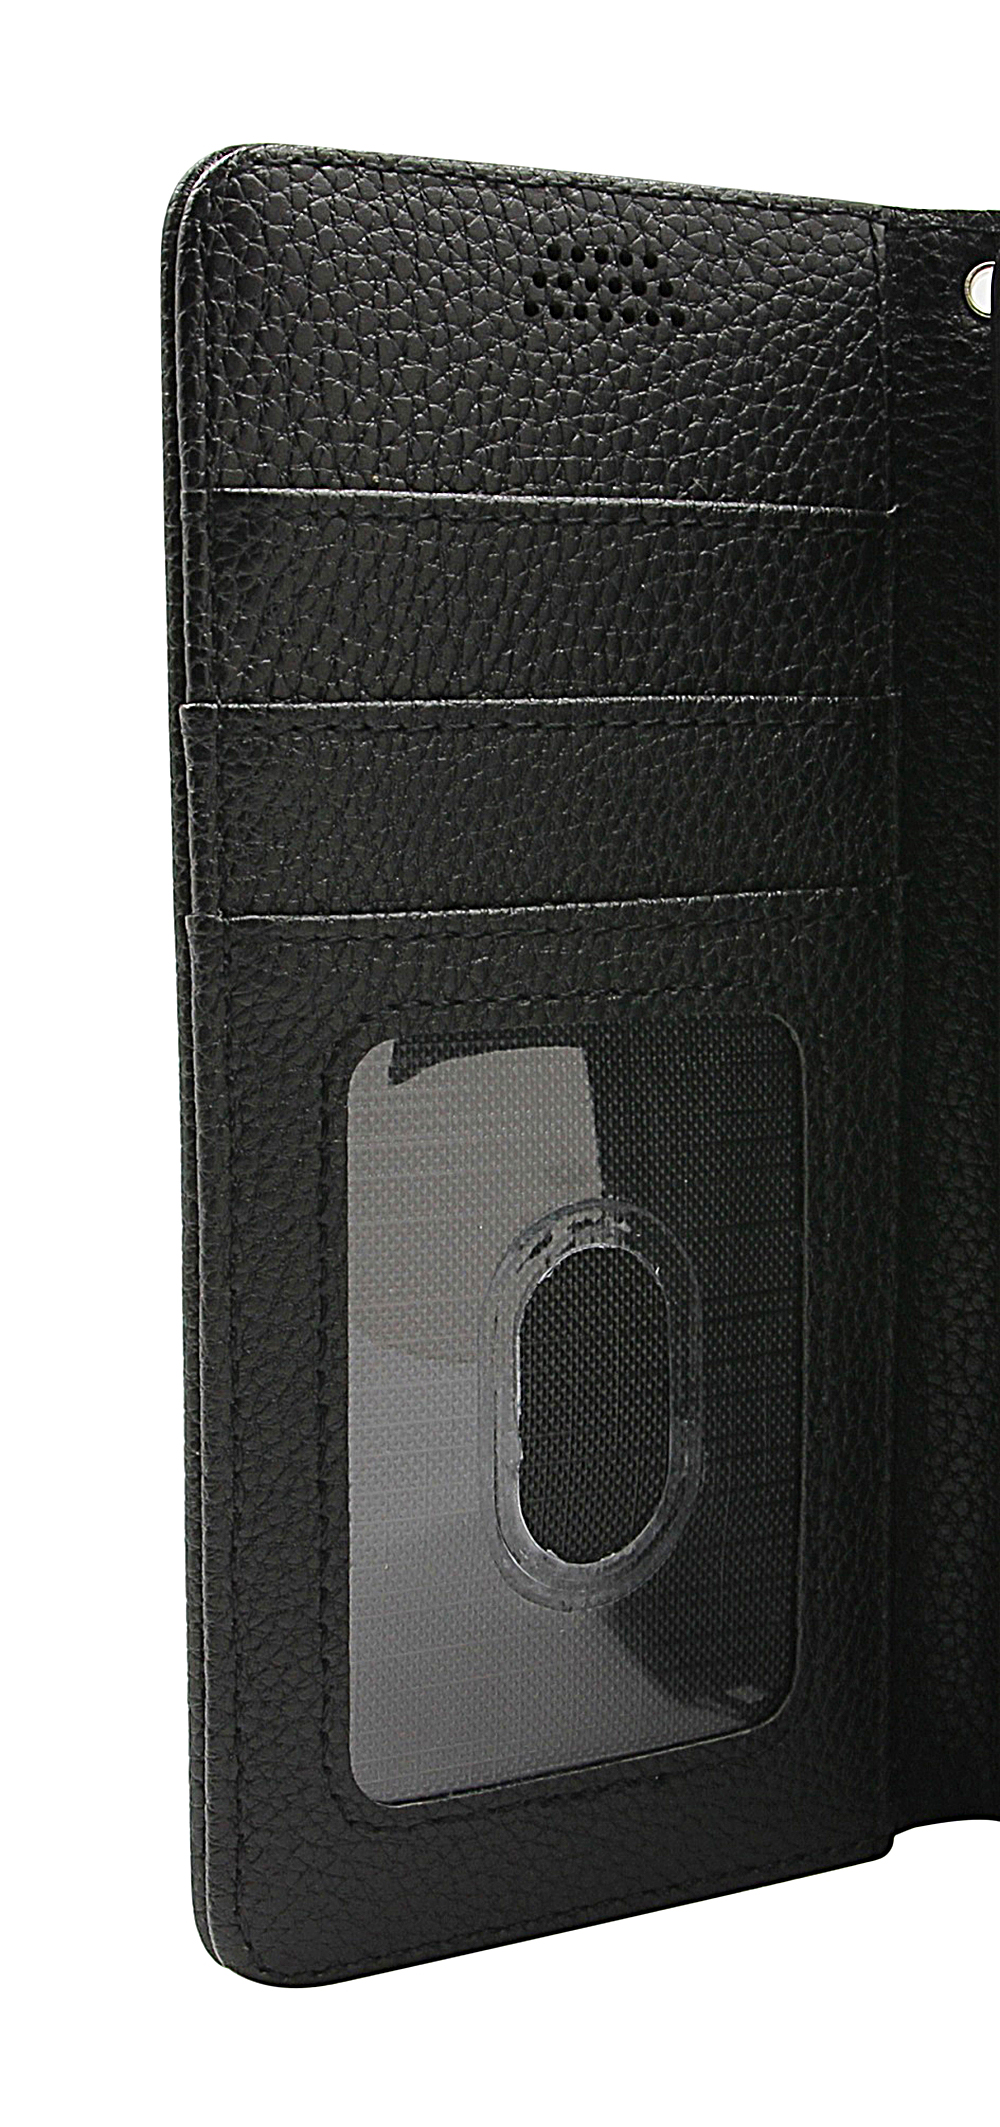 billigamobilskydd.seNew Standcase Wallet HTC U11